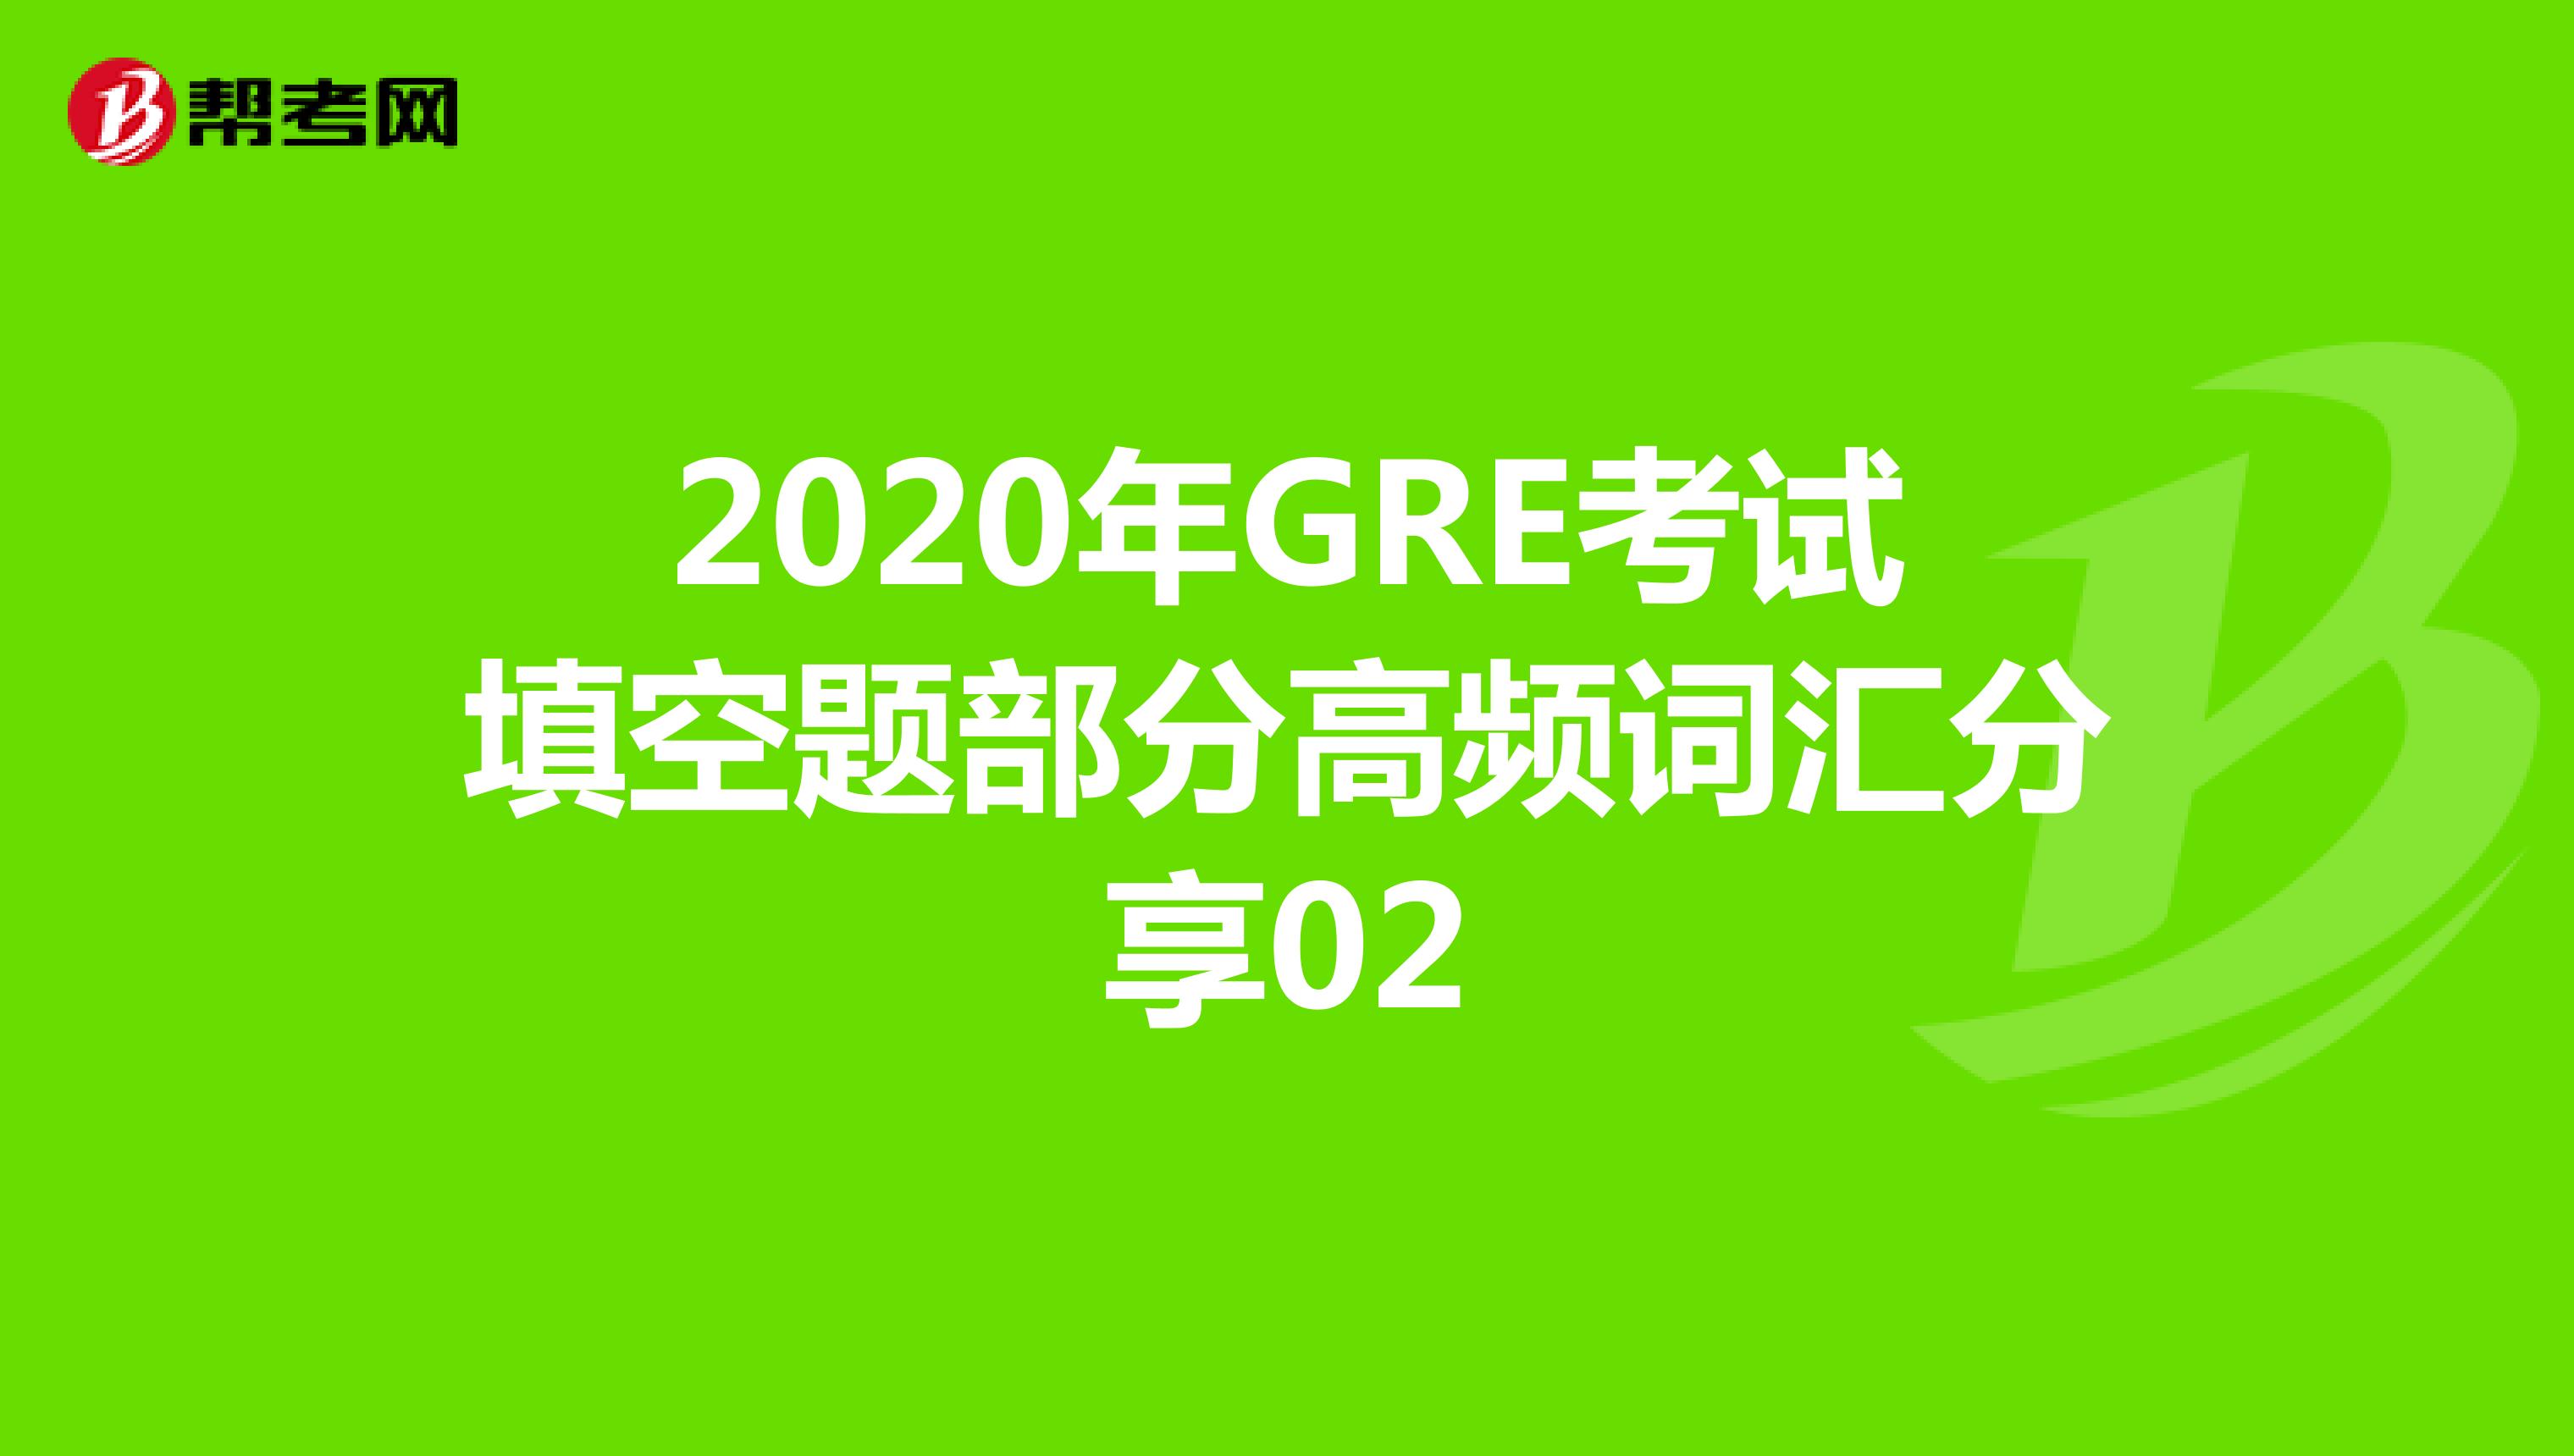 2020年GRE考试填空题部分高频词汇分享02